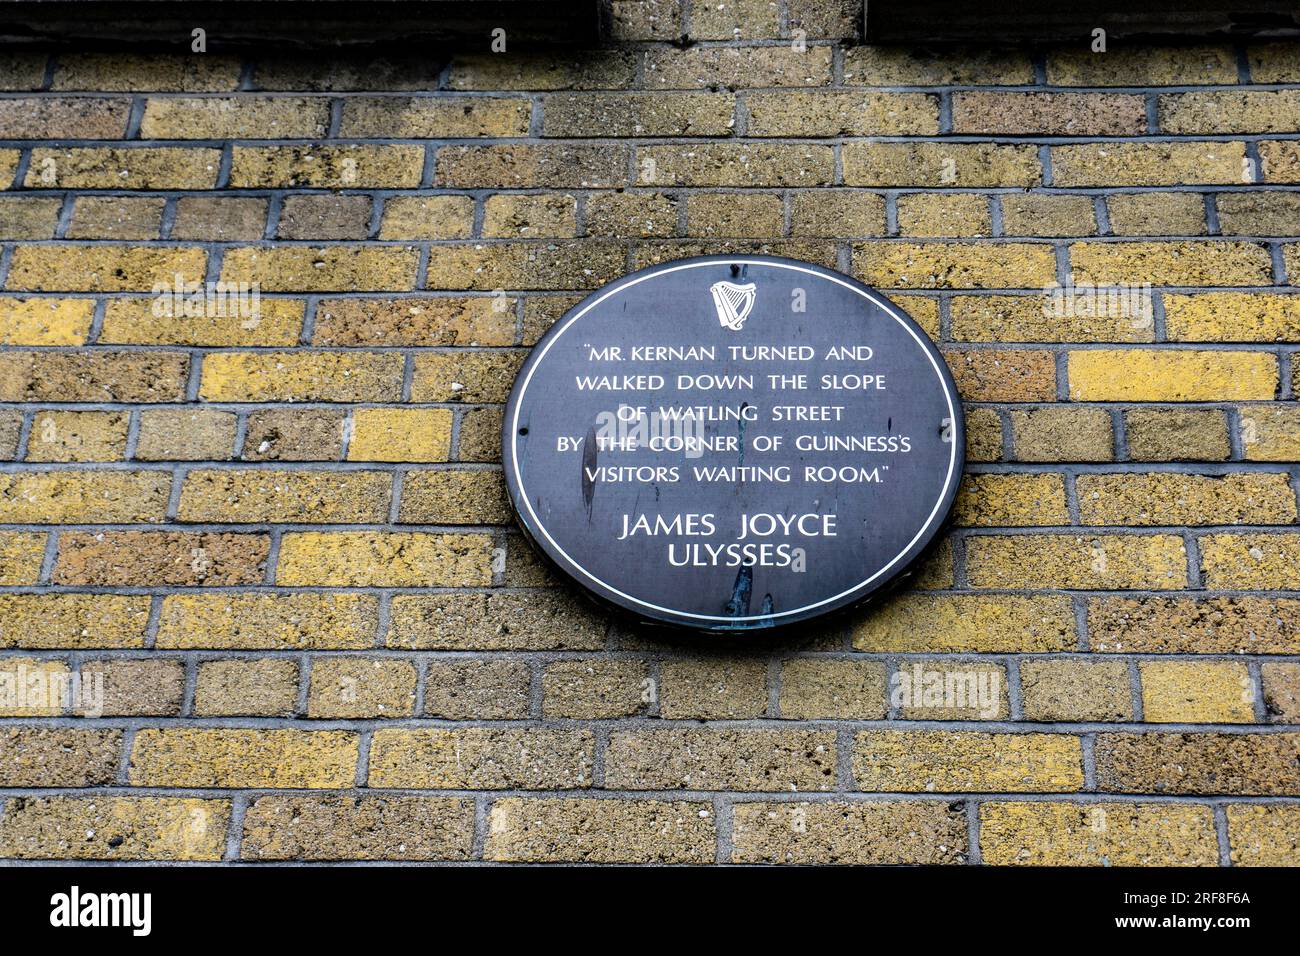 Una placa en Watling Street, Dublín, Irlanda con una cita de Ulysses de James Joyce que contiene una referencia a Watling Street. Foto de stock